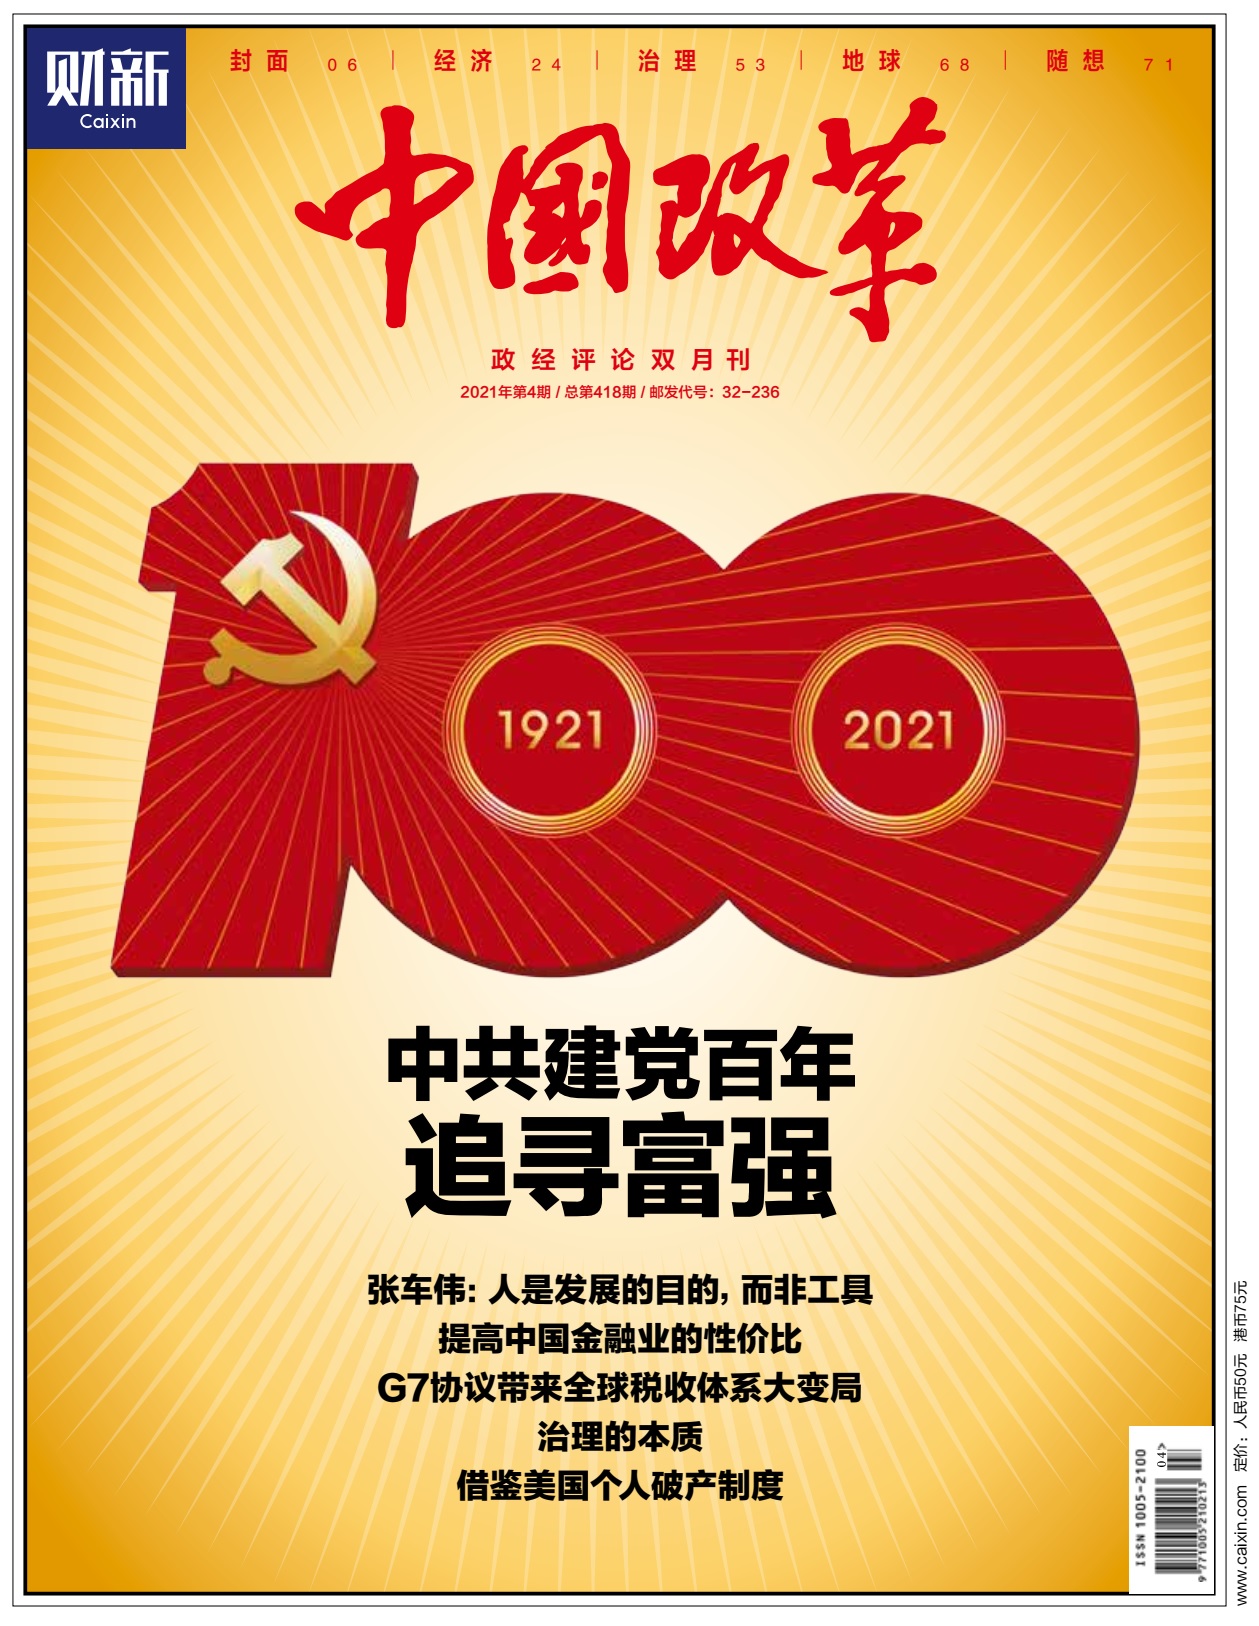 《中国改革》第418期